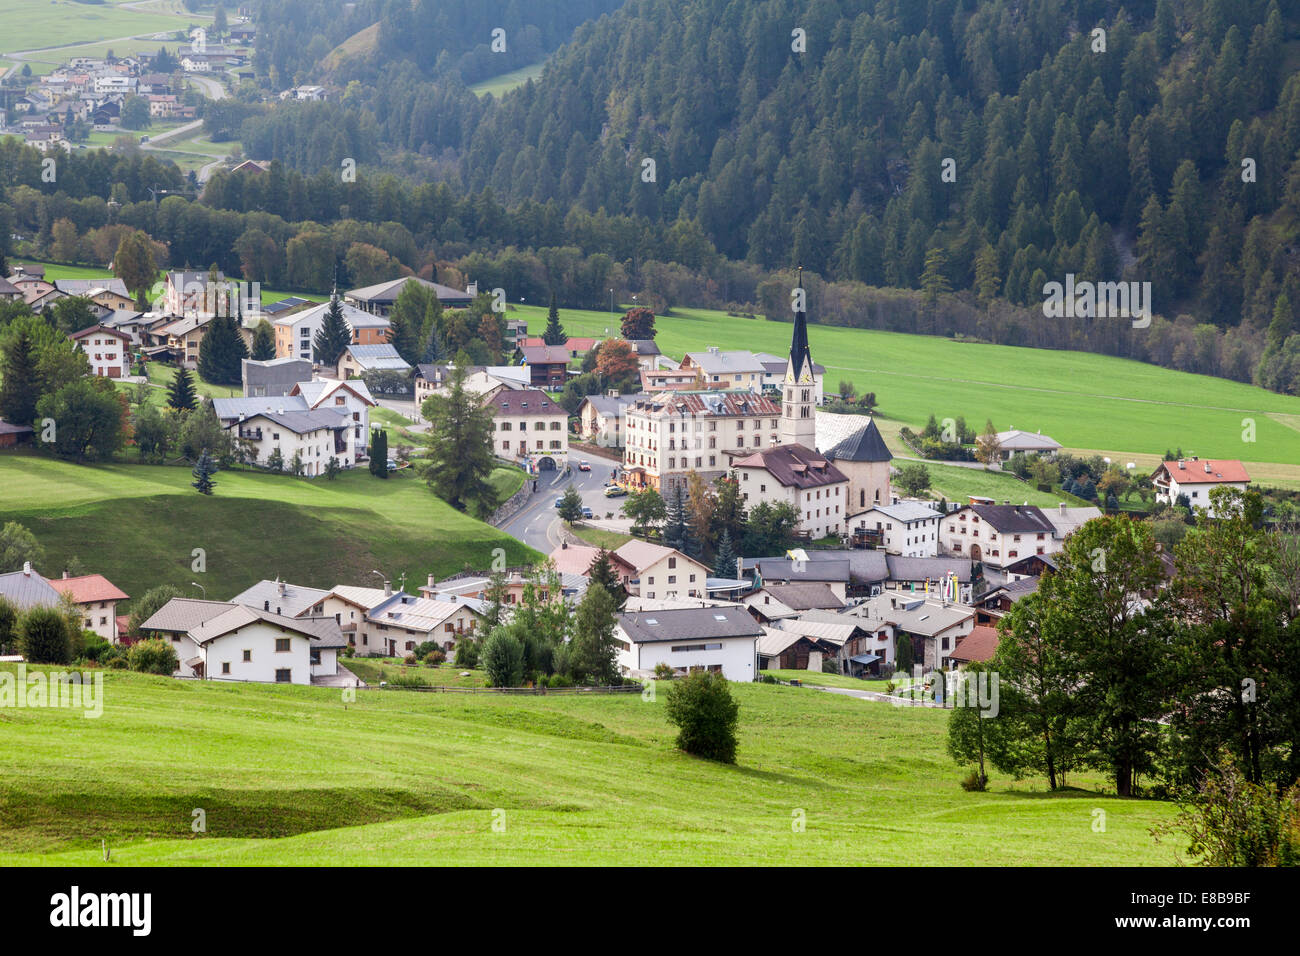 La ville pittoresque de Santa Maria Val Mustair, Grisons, Suisse Banque D'Images